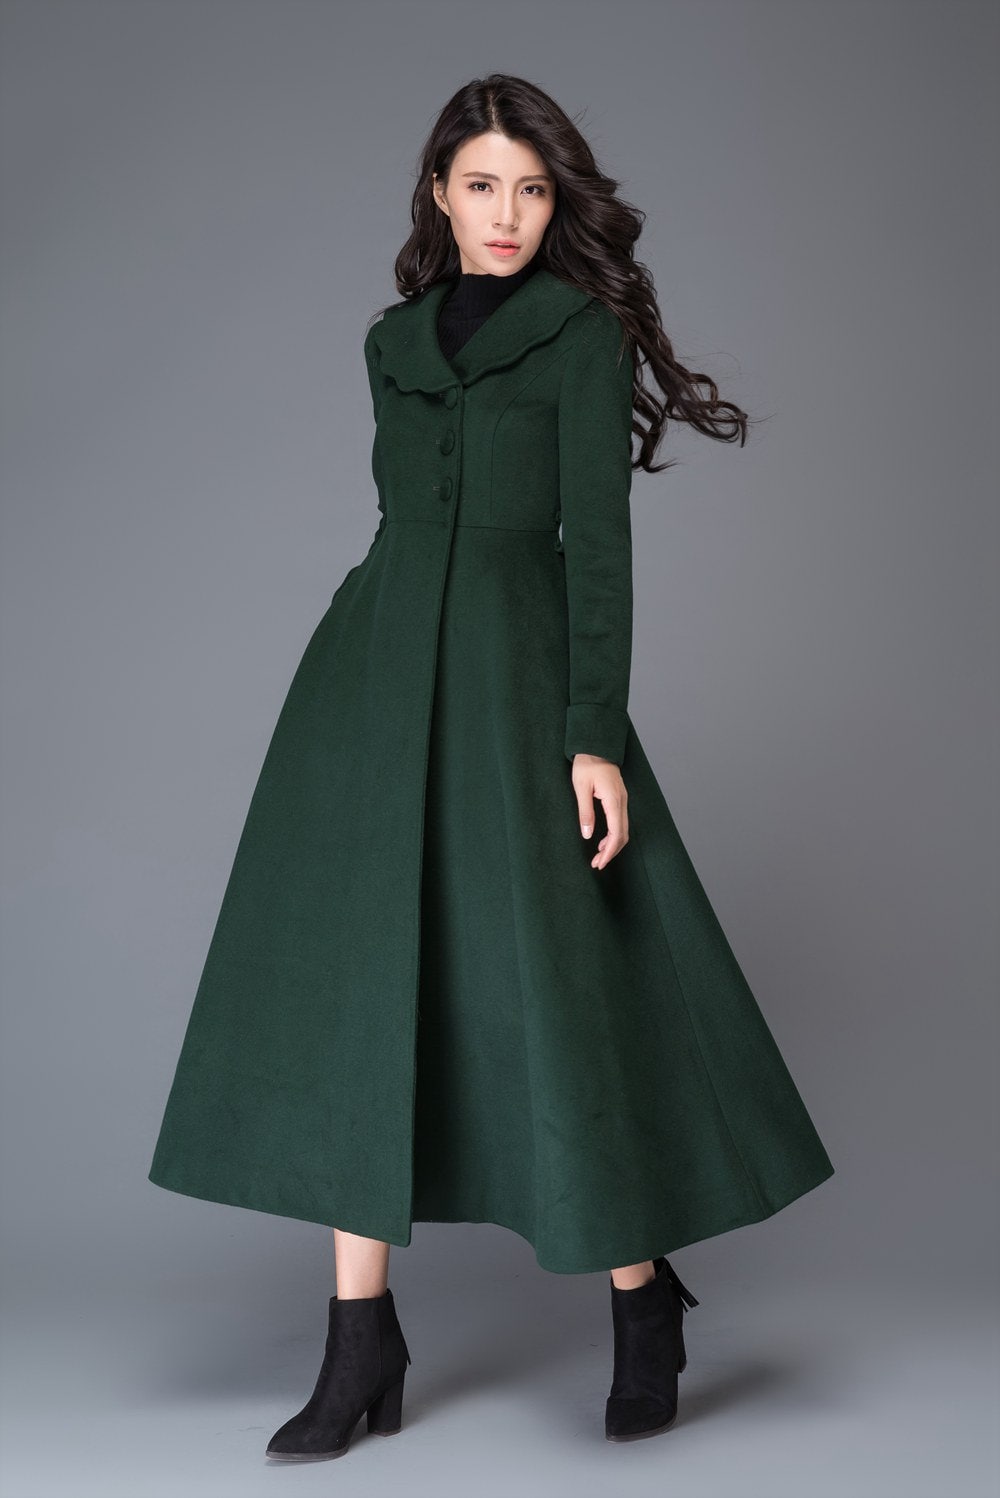 Green wool coat winter coat wool coat princess coat woman